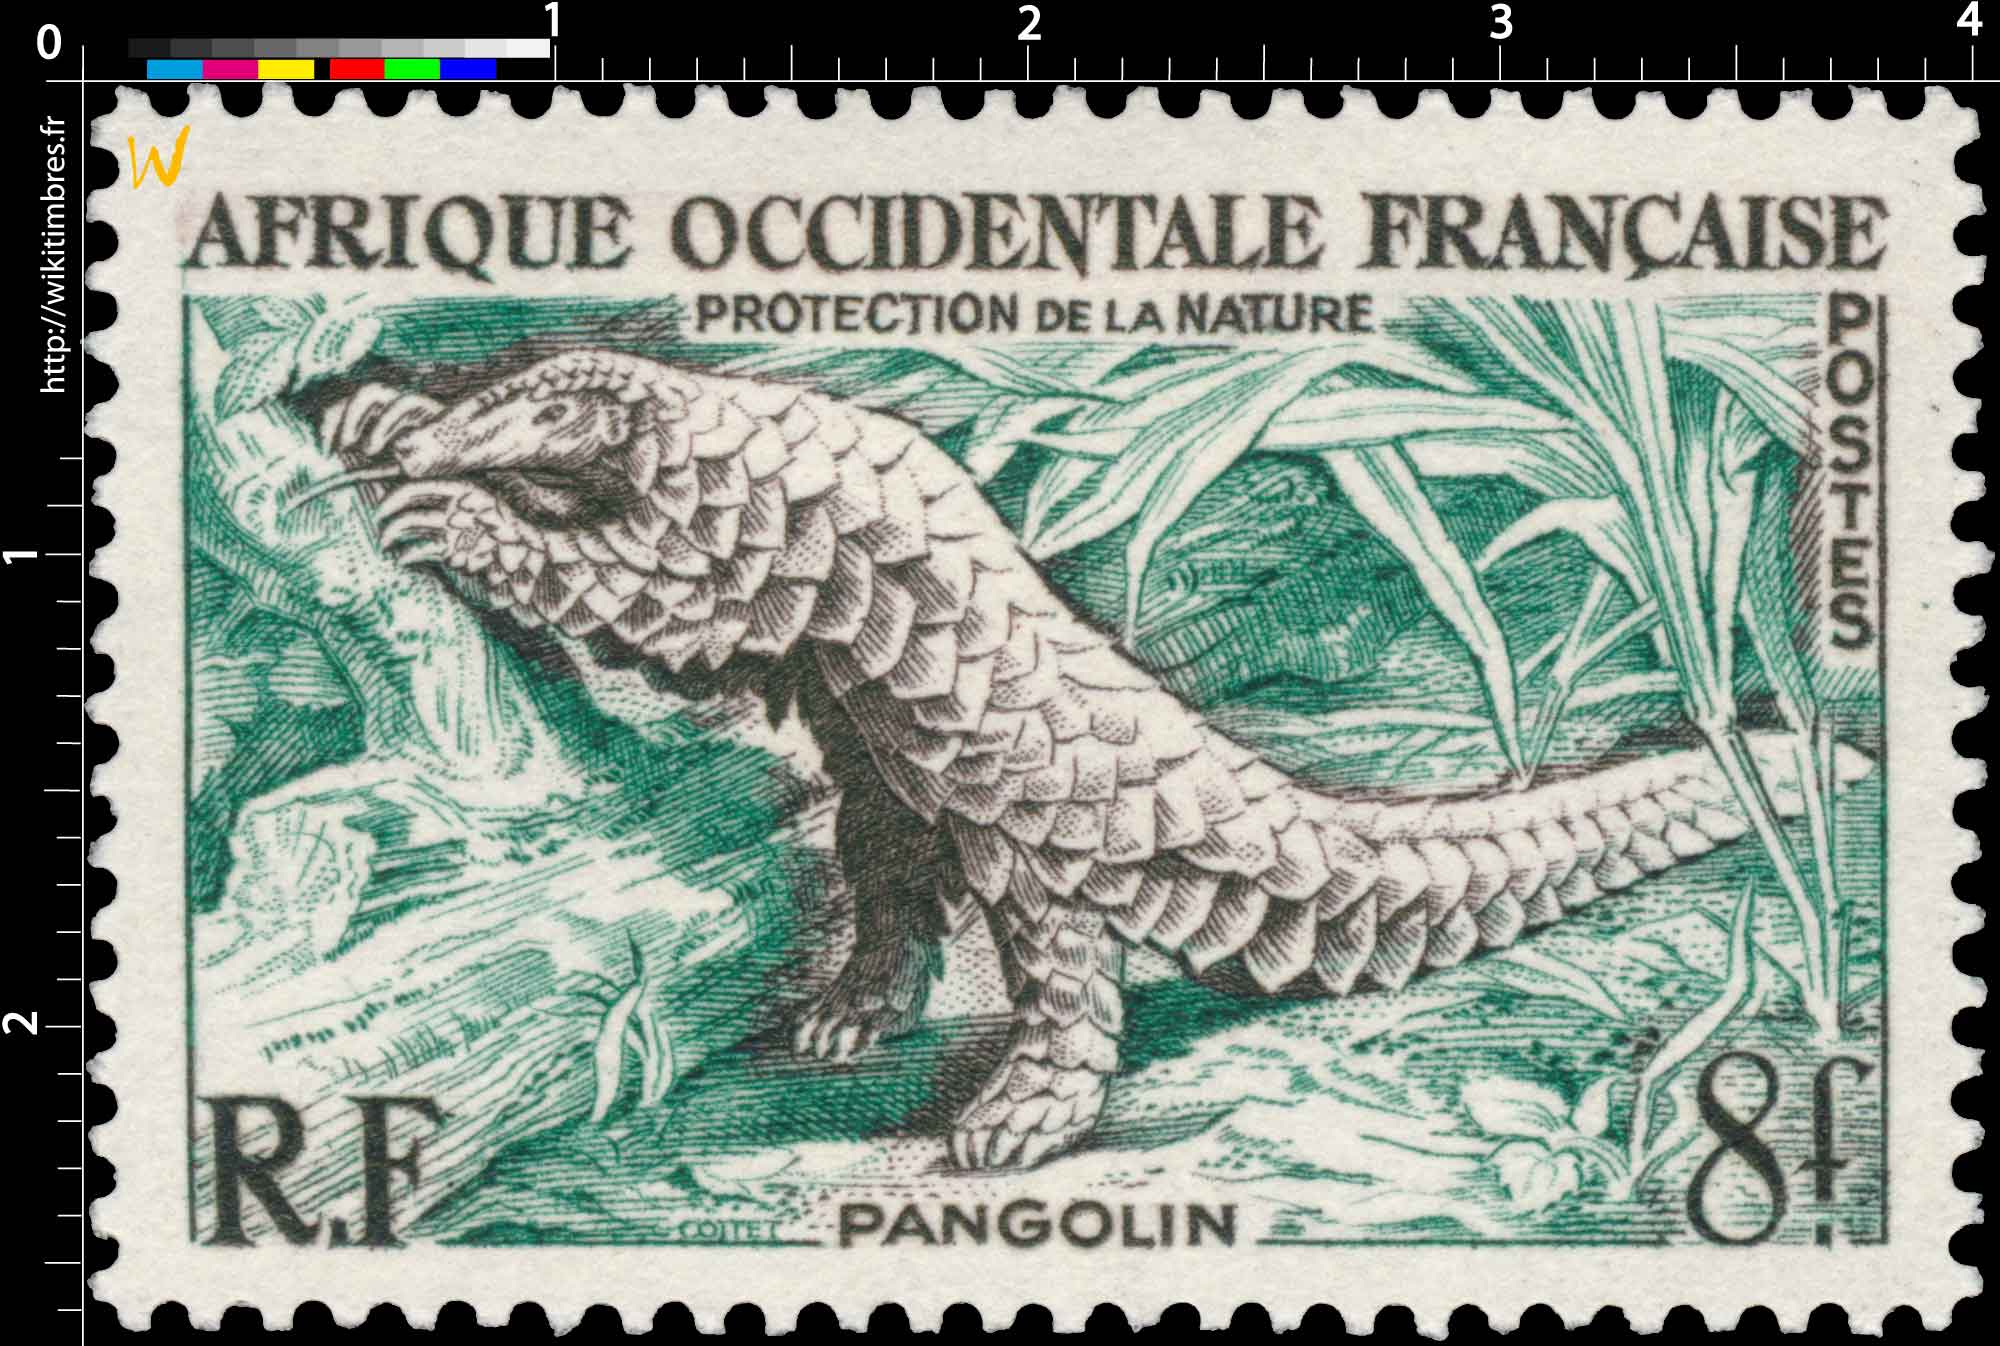 Afrique Occidentale Française - Protection de la nature - Pangolin